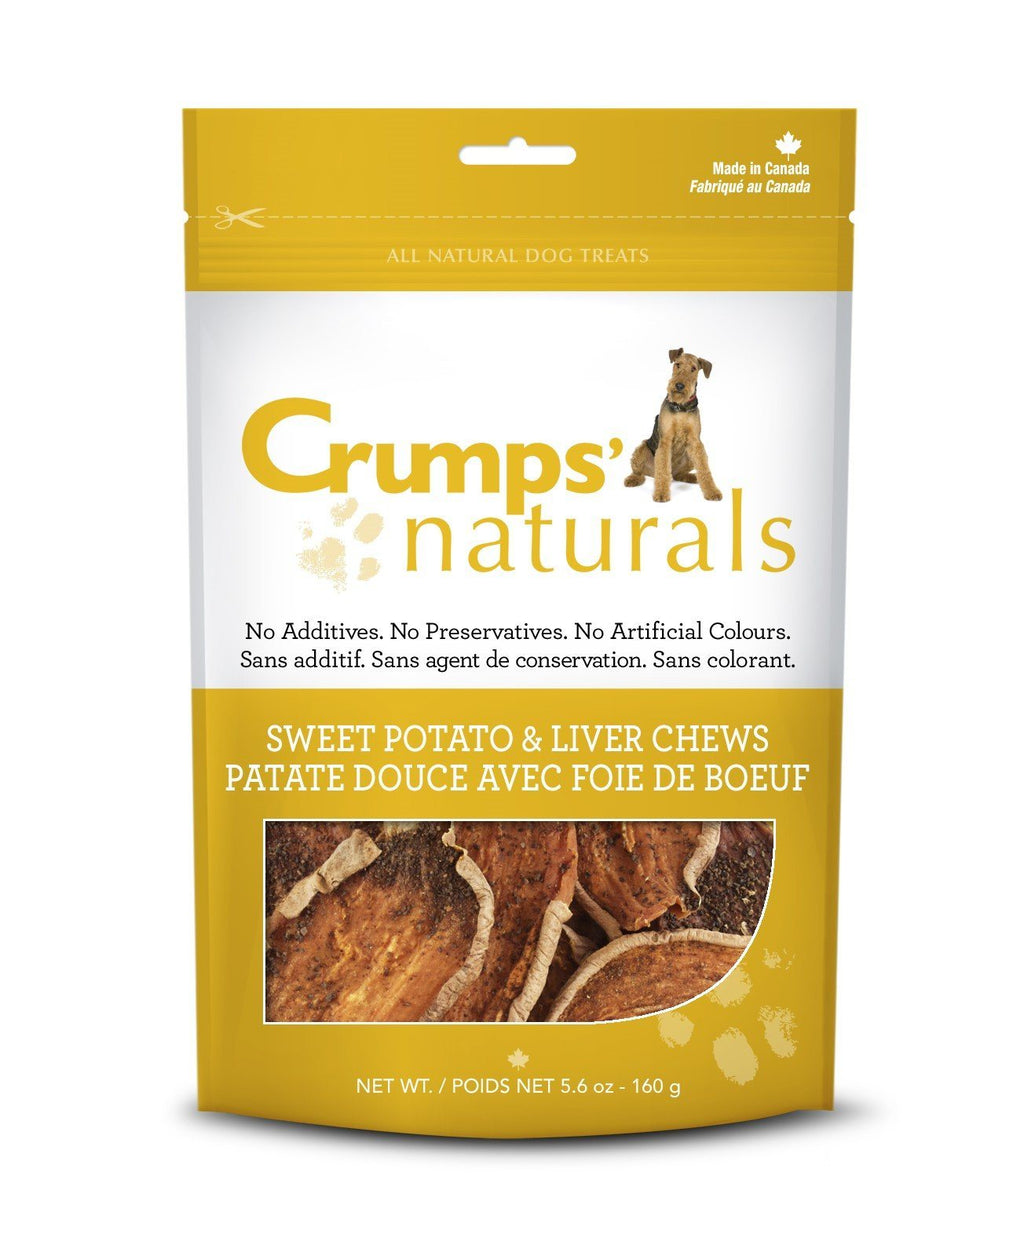 Crumps' Naturals Sweet Potato & Liver Chews Chewy Dog Treats - 11.6 oz Bag  